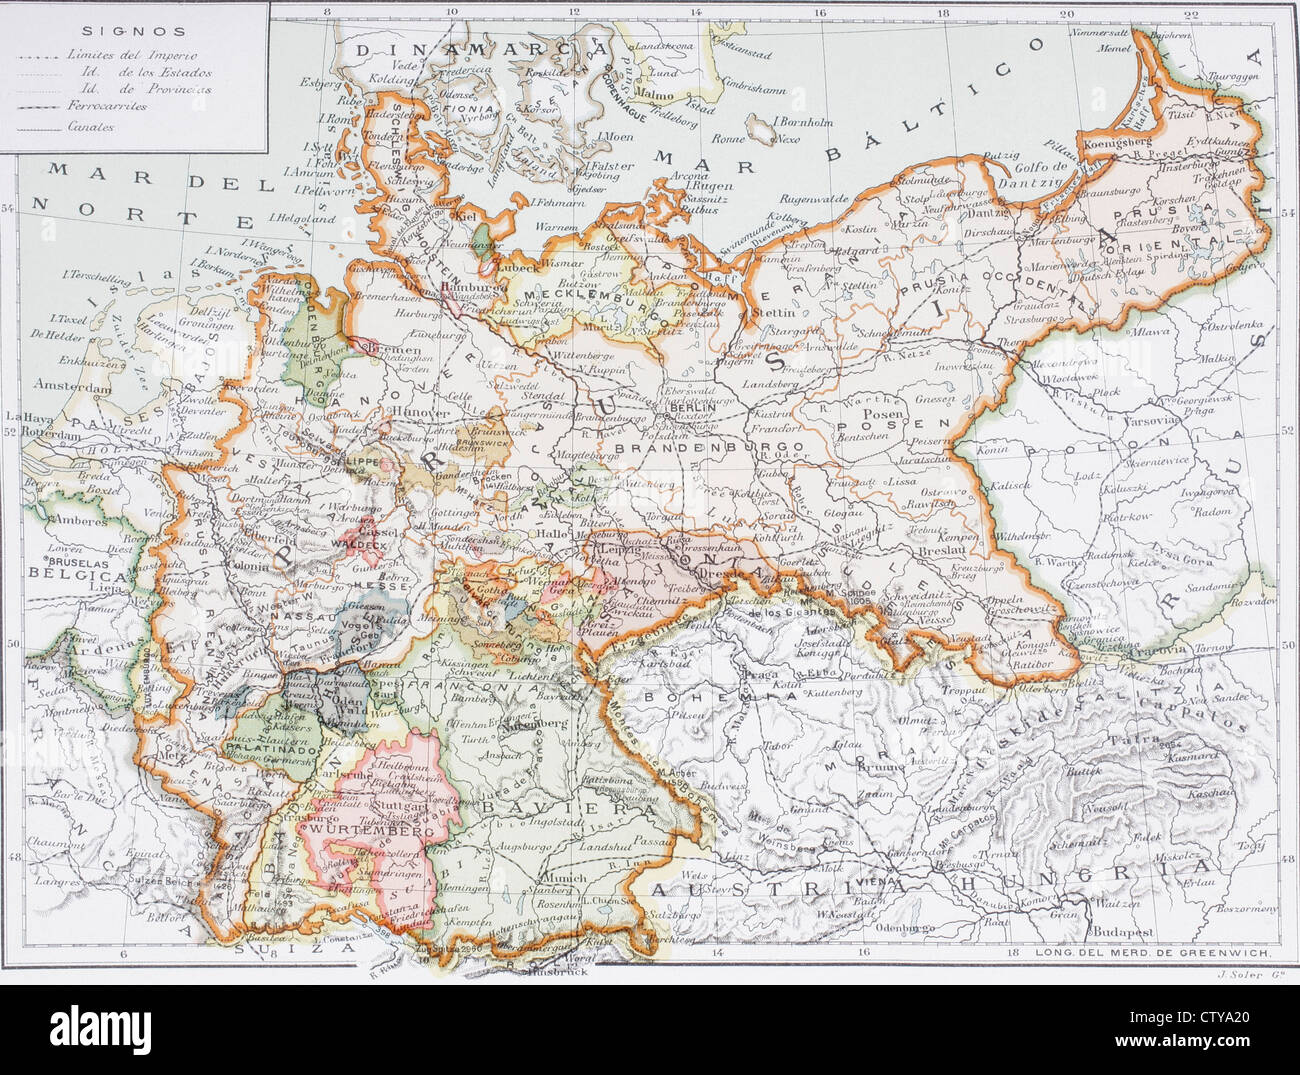 Mapa de la Alemania imperial antes de la Primera Guerra Mundial, en las postrimerías del siglo XX. Mapa editado en idioma español. Prusia y el Imperio Alemán. Foto de stock